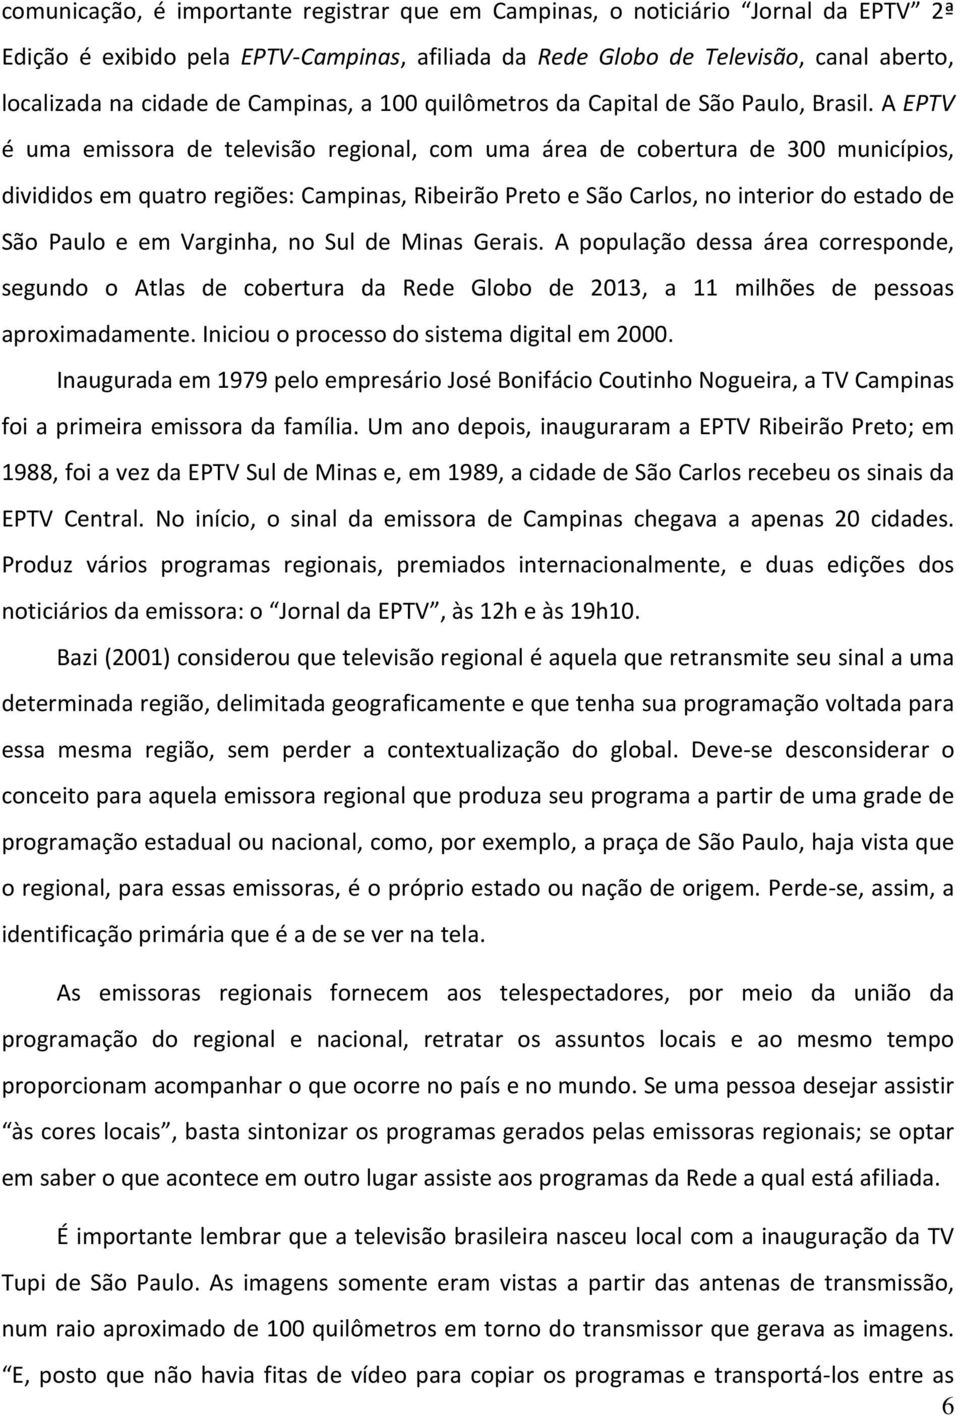 A EPTV é uma emissora de televisão regional, com uma área de cobertura de 300 municípios, divididos em quatro regiões: Campinas, Ribeirão Preto e São Carlos, no interior do estado de São Paulo e em